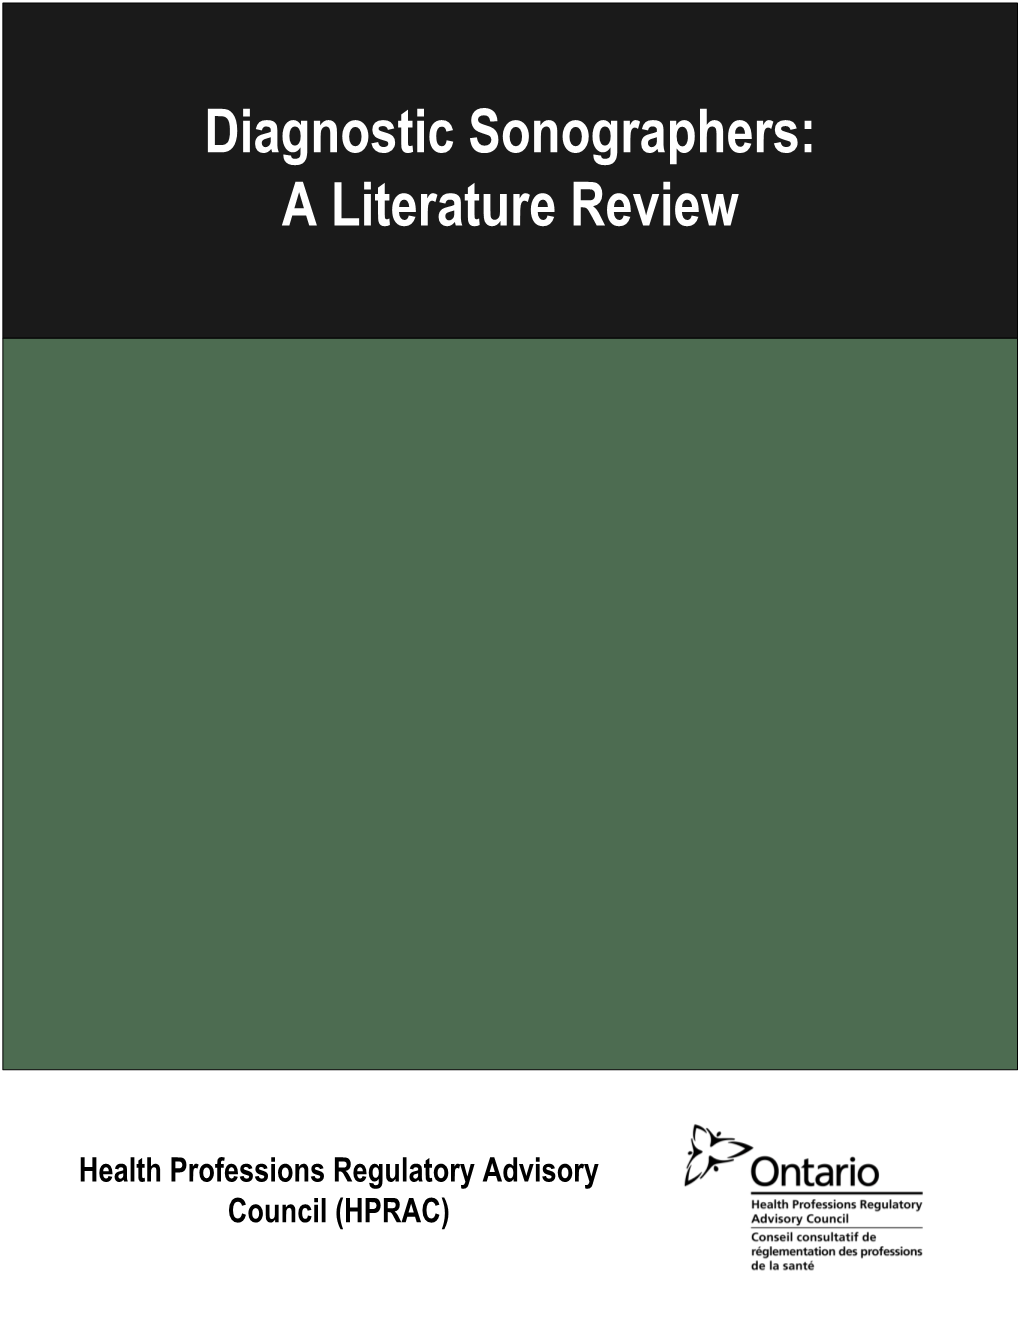 Diagnostic Sonographers: a Literature Review